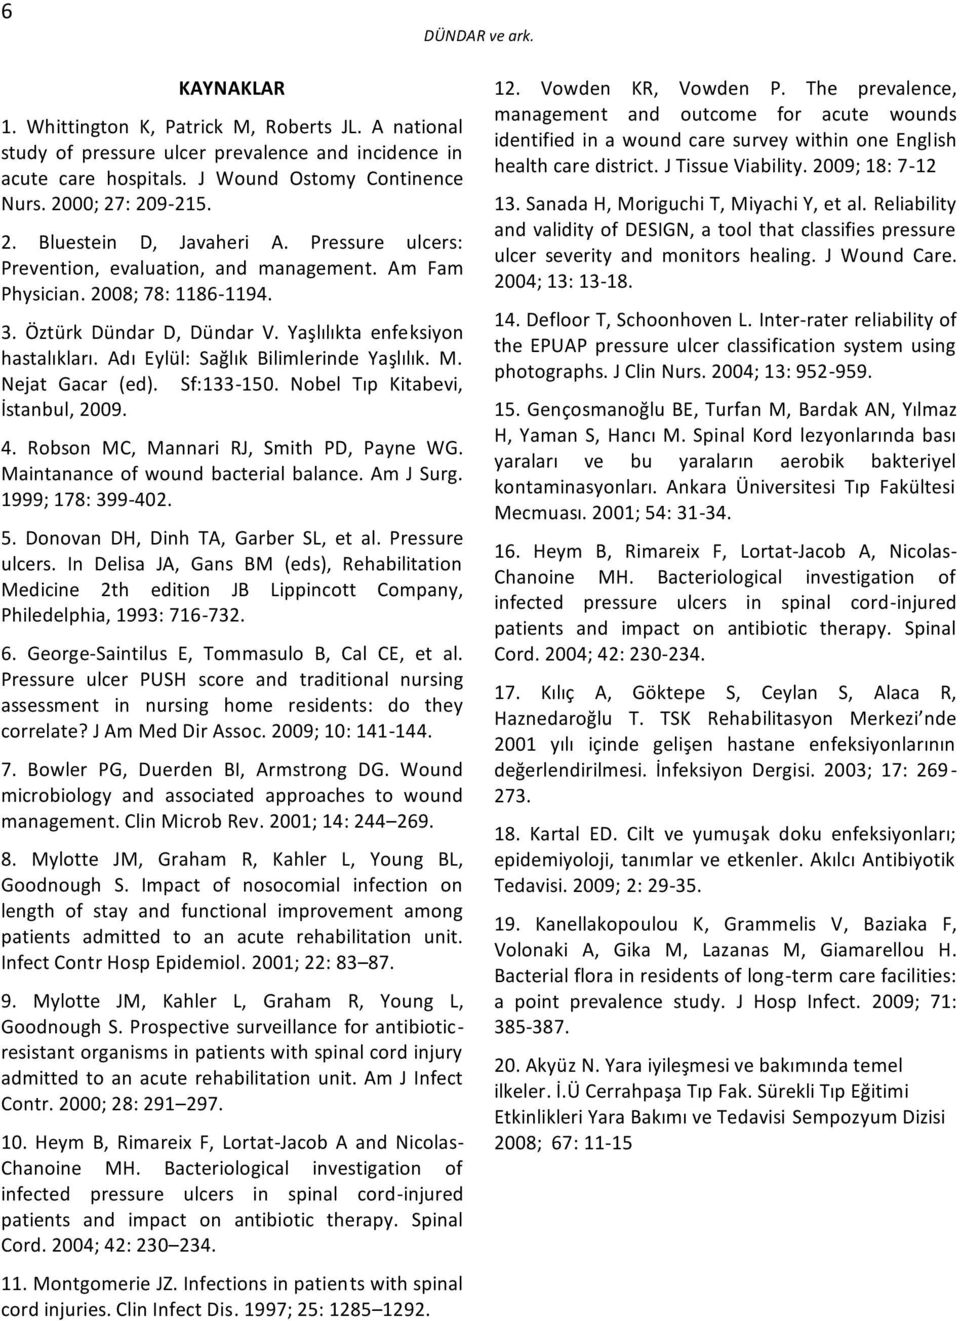 Yaşlılıkta enfeksiyon hastalıkları. Adı Eylül: Sağlık Bilimlerinde Yaşlılık. M. Nejat Gacar (ed). Sf:1-150. Nobel Tıp Kitabevi, İstanbul, 2009. 4. Robson MC, Mannari RJ, Smith PD, Payne WG.